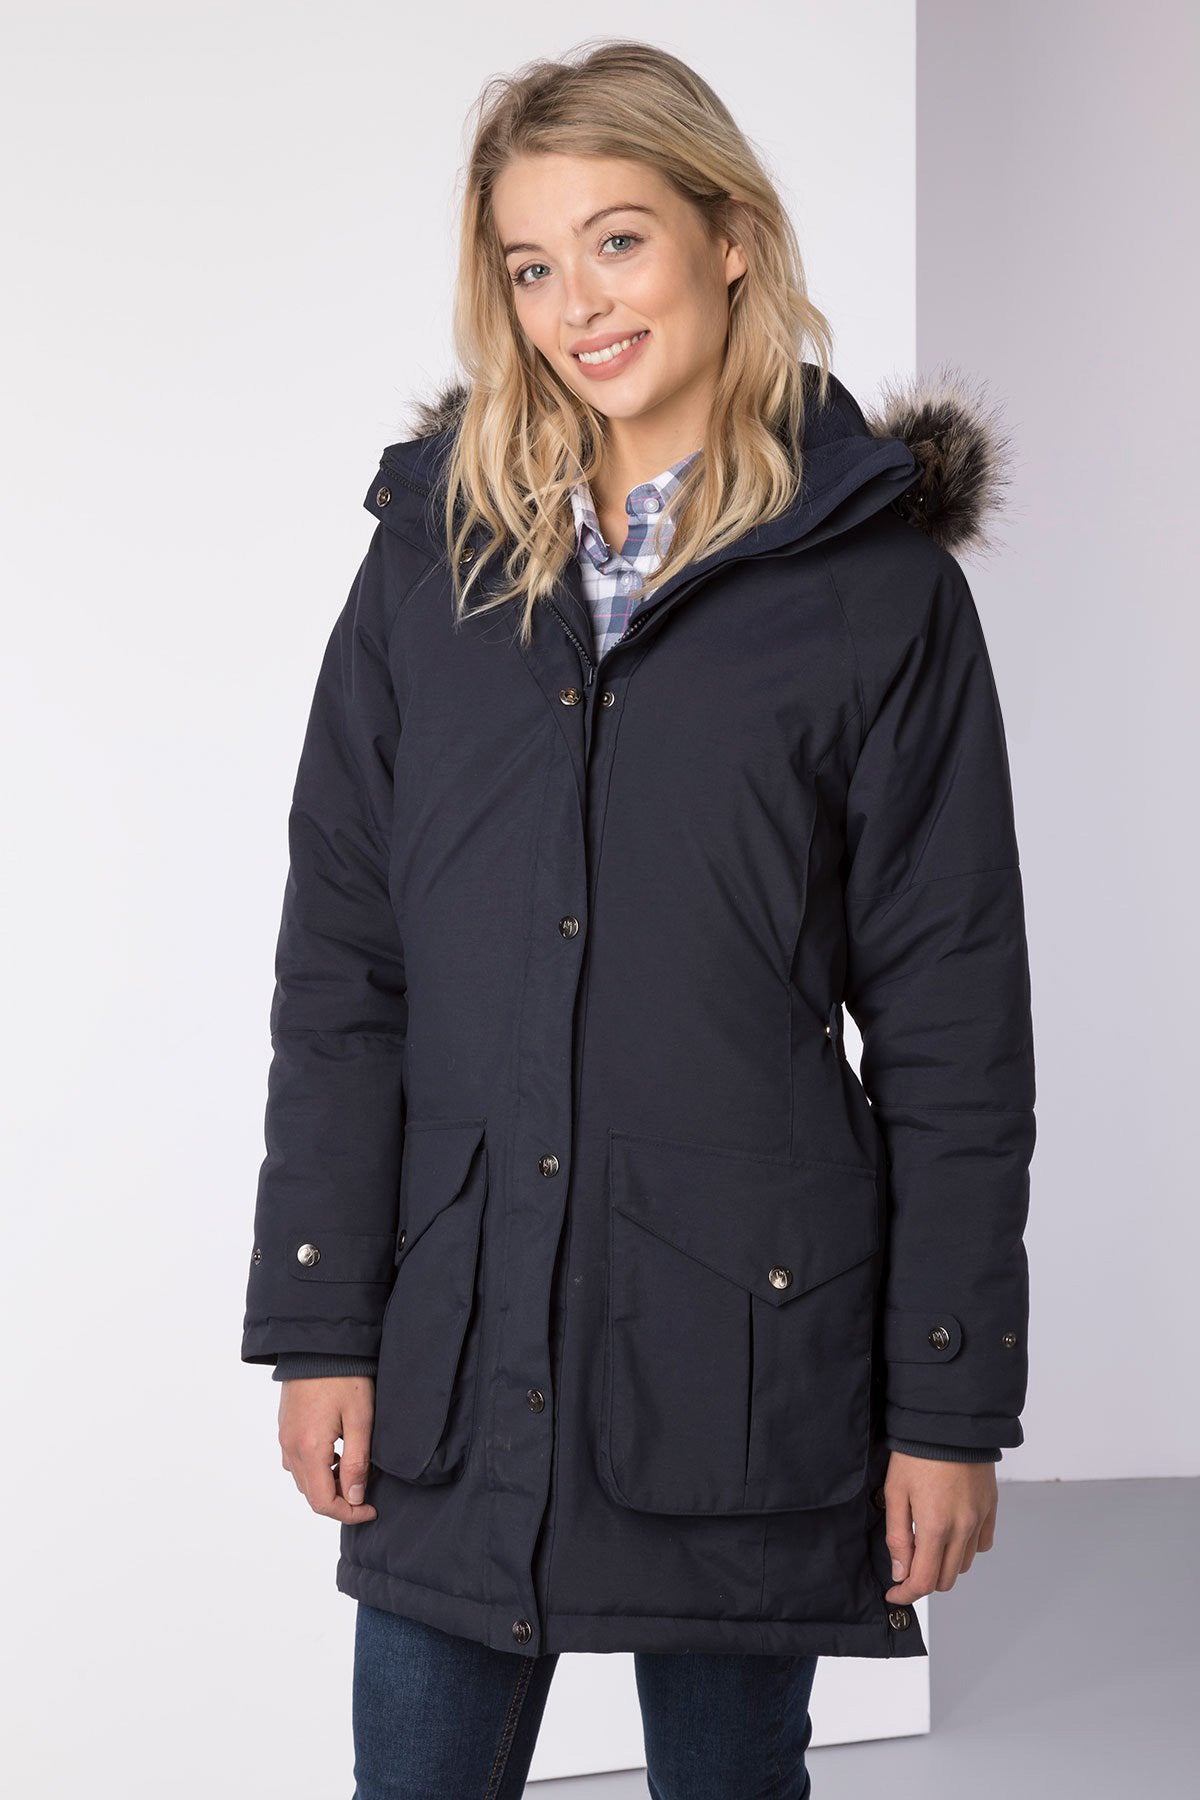 Ladies Long Winter Coat UK | Womens Hooded Coat | Rydale